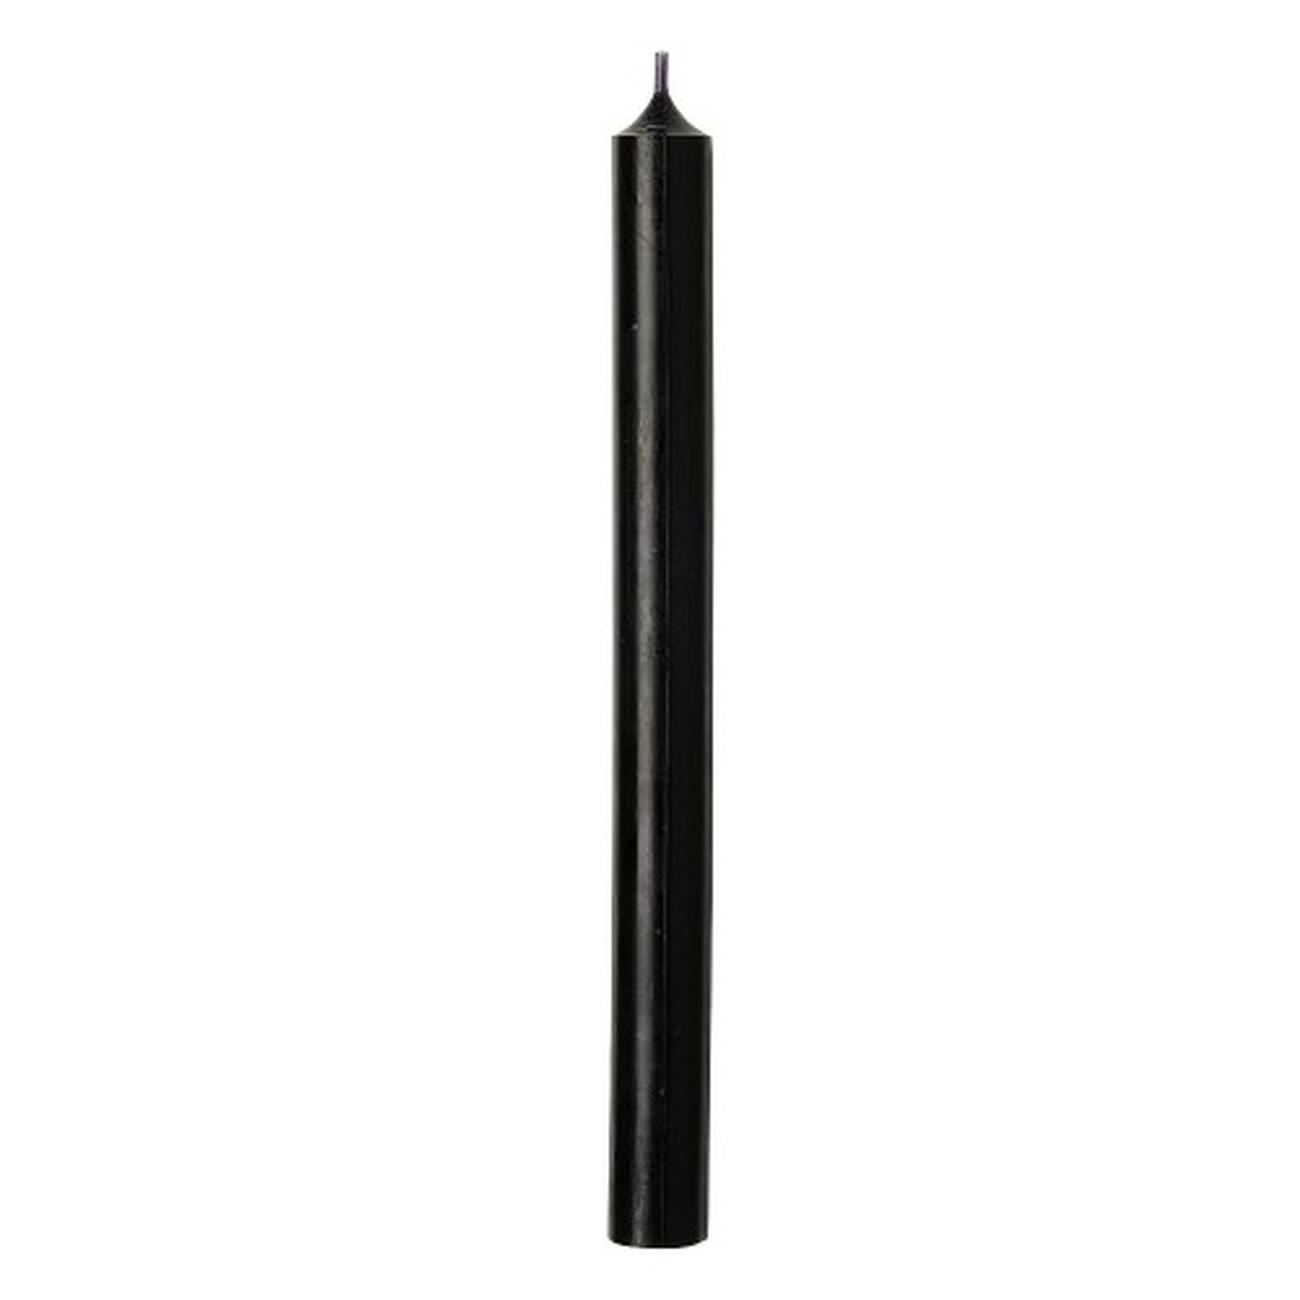 ihr-cylinder-candle-black - IHR Cylinder Candle Black